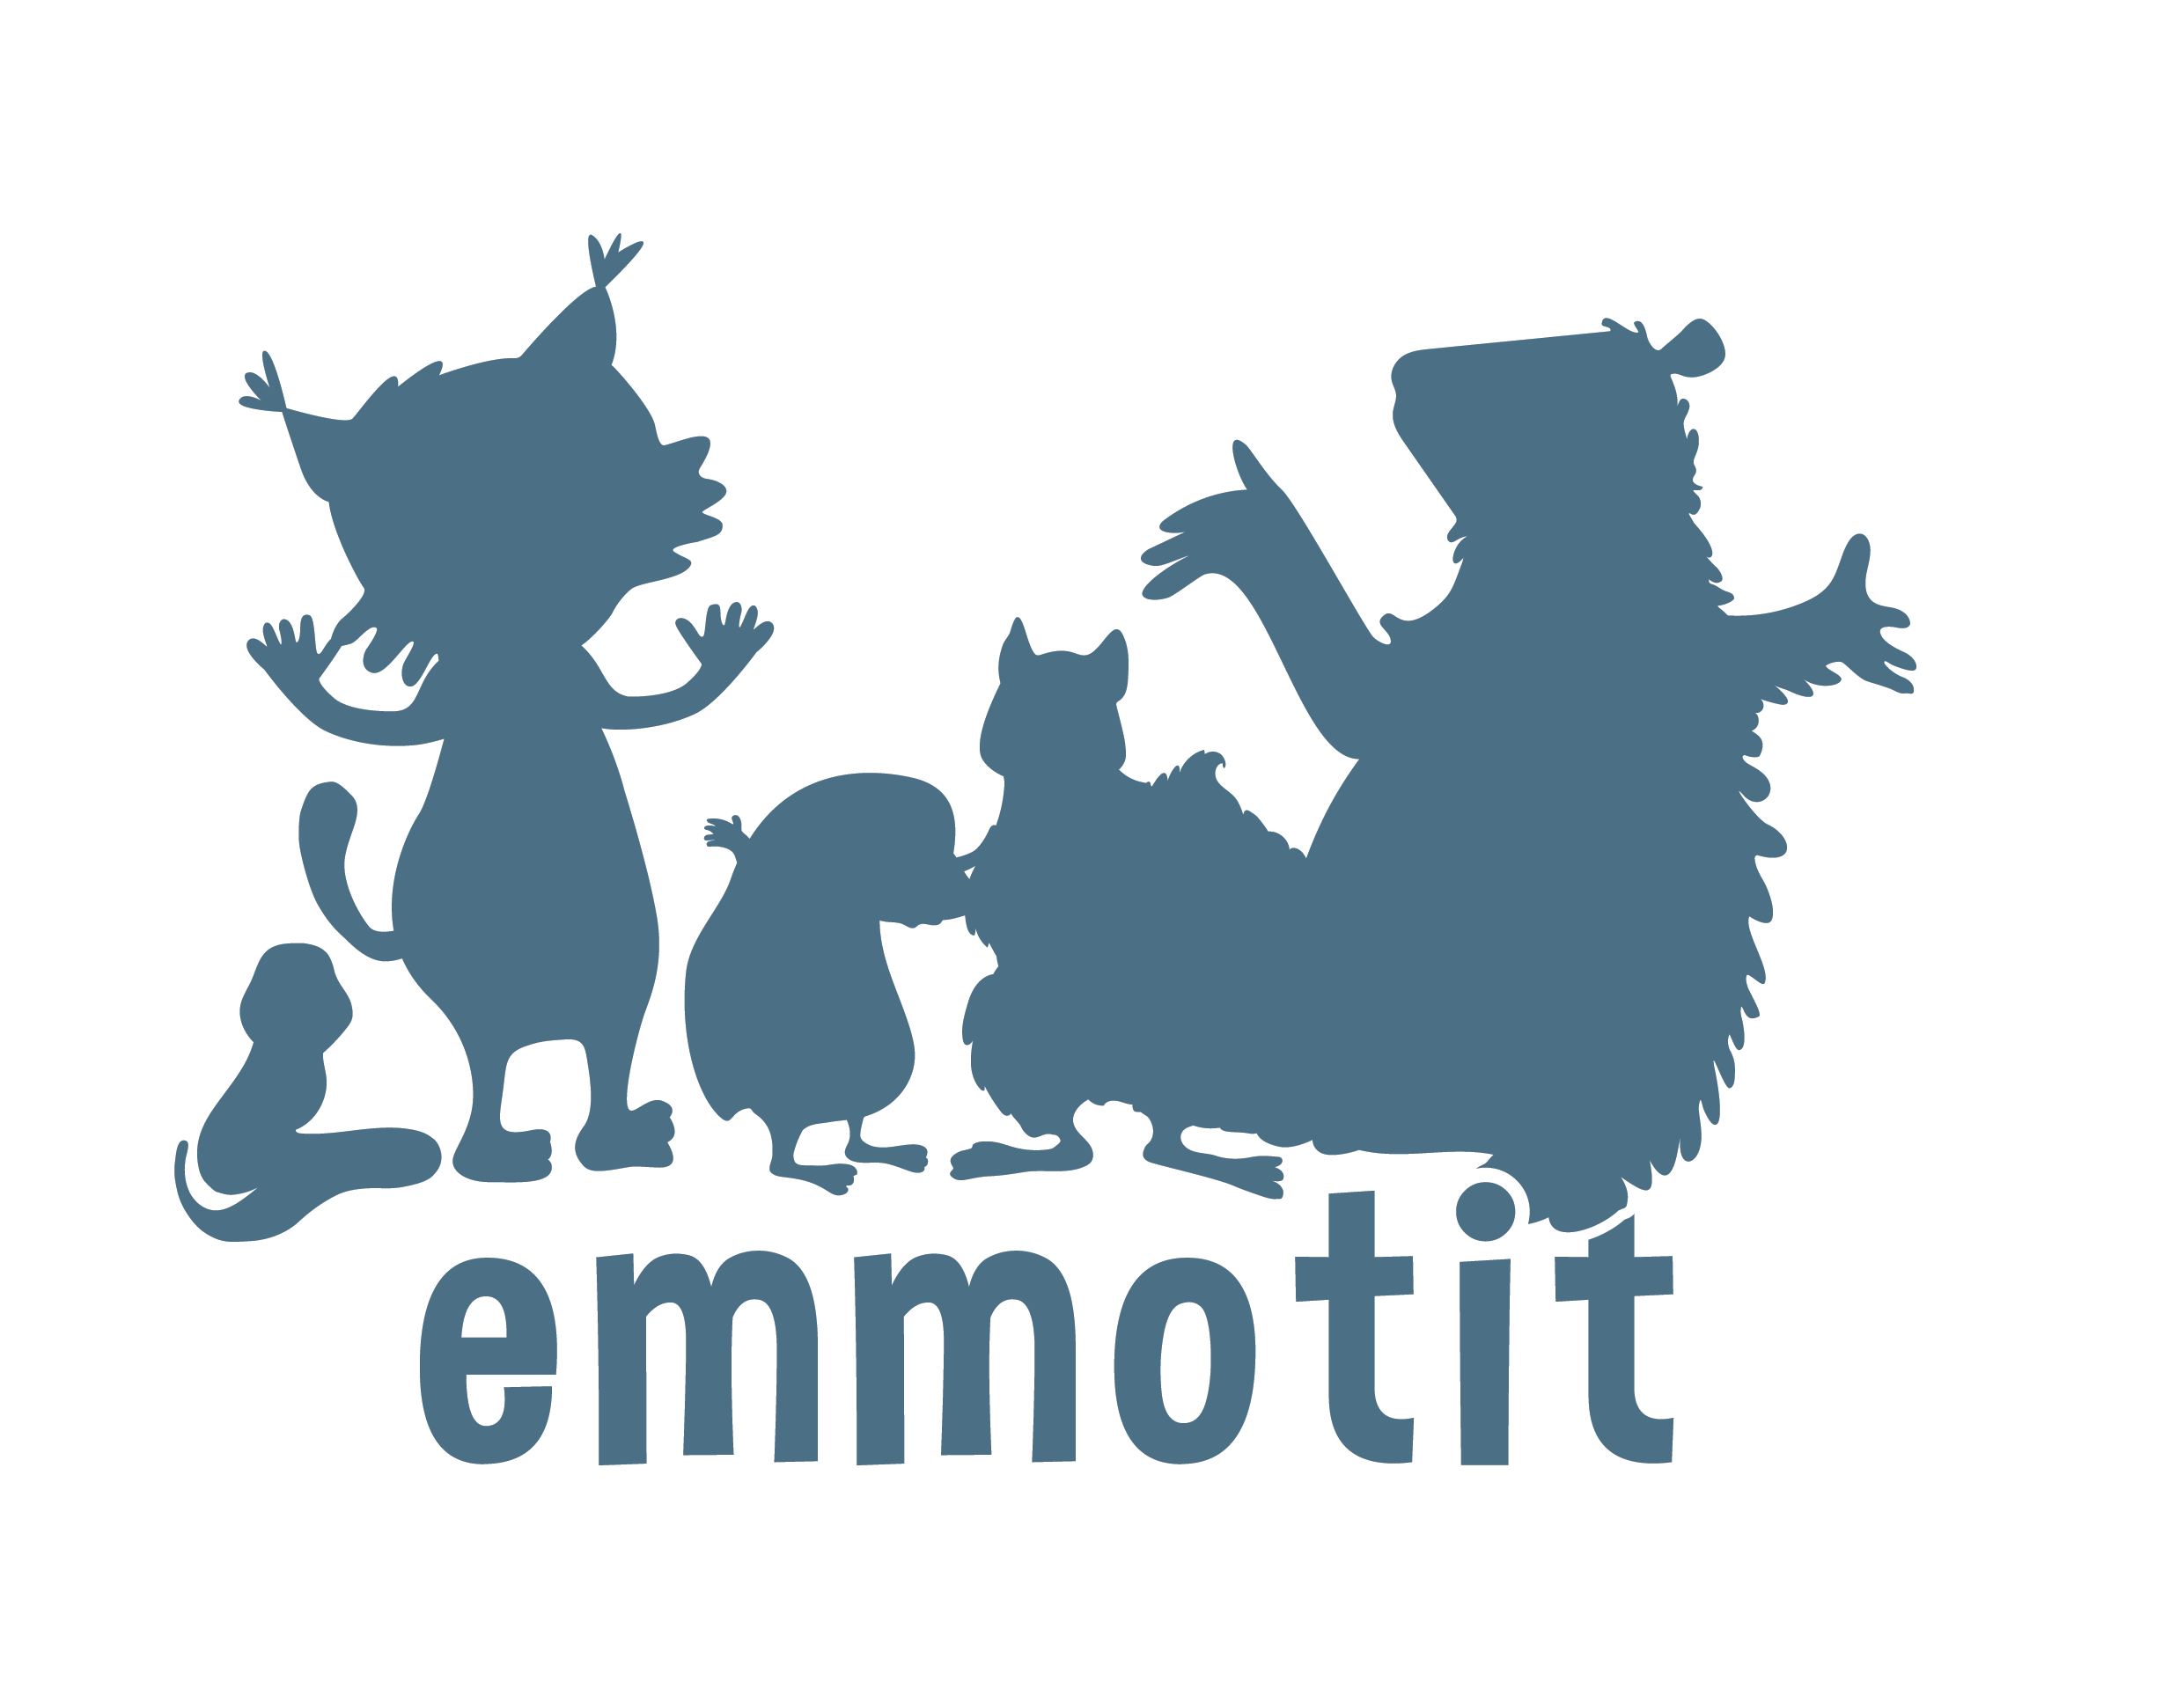 Emmotit Oy